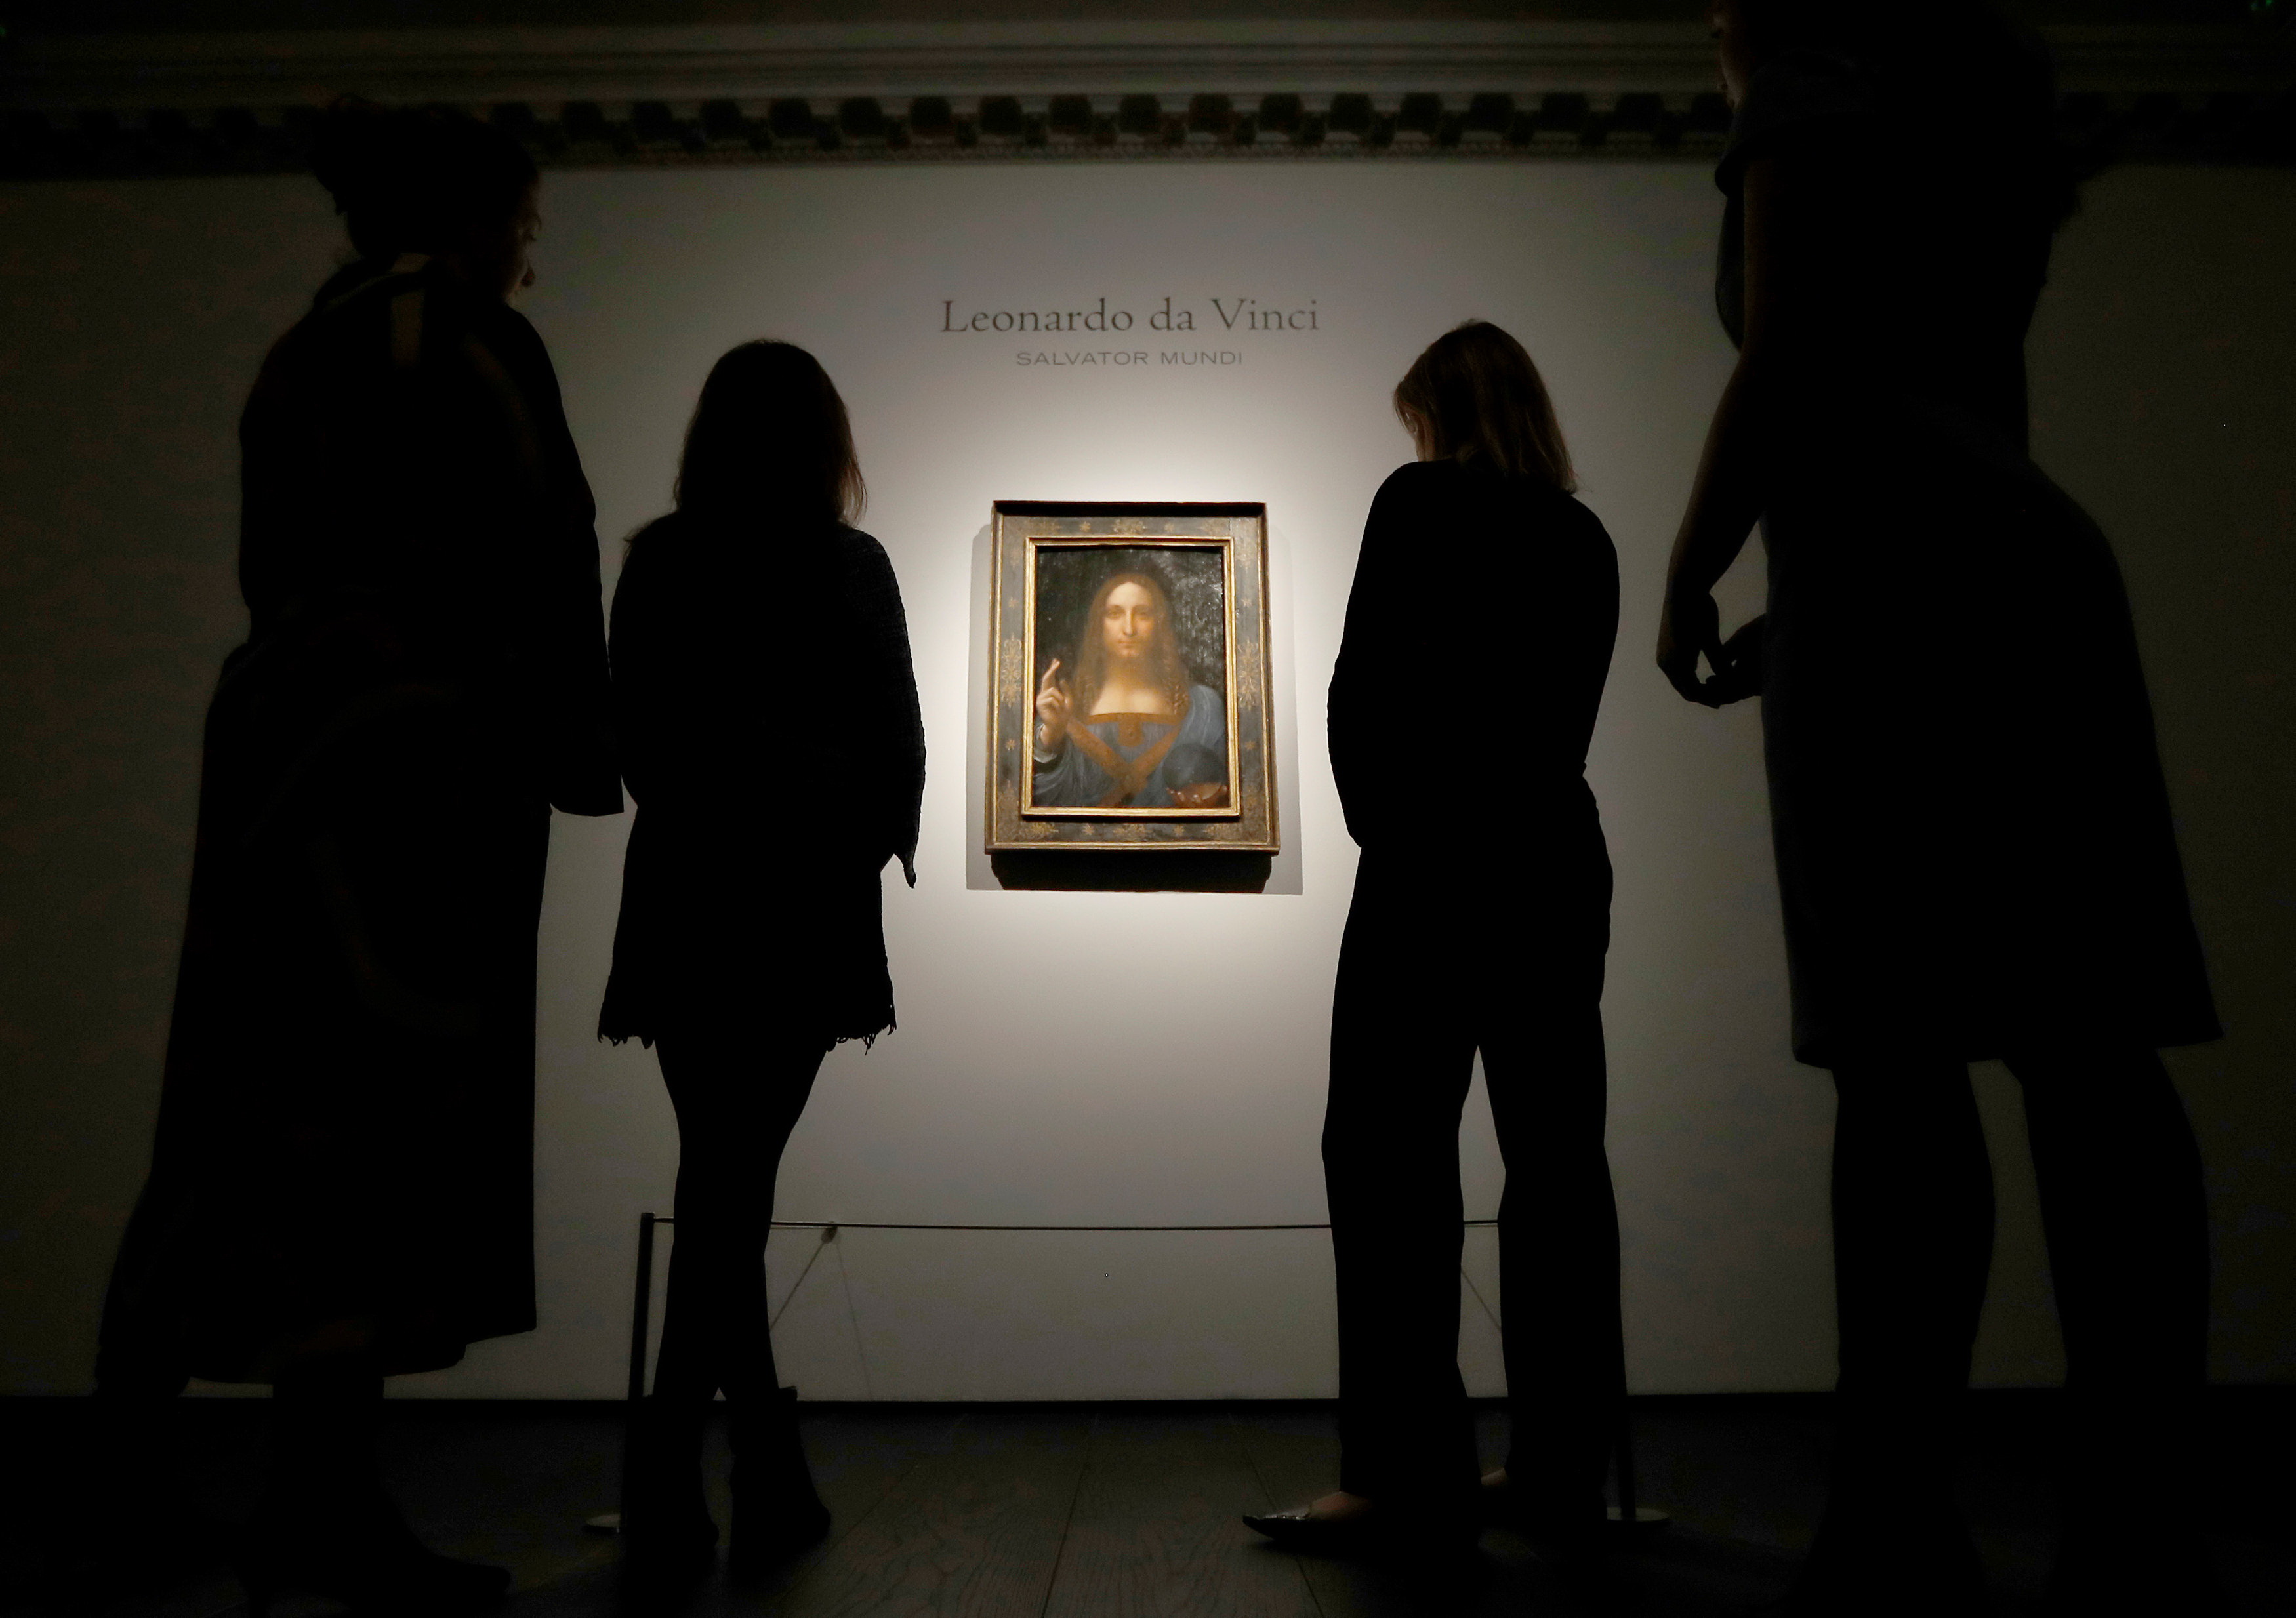 Da Vinci portrait of Christ sells for record $450.3 mln in New York